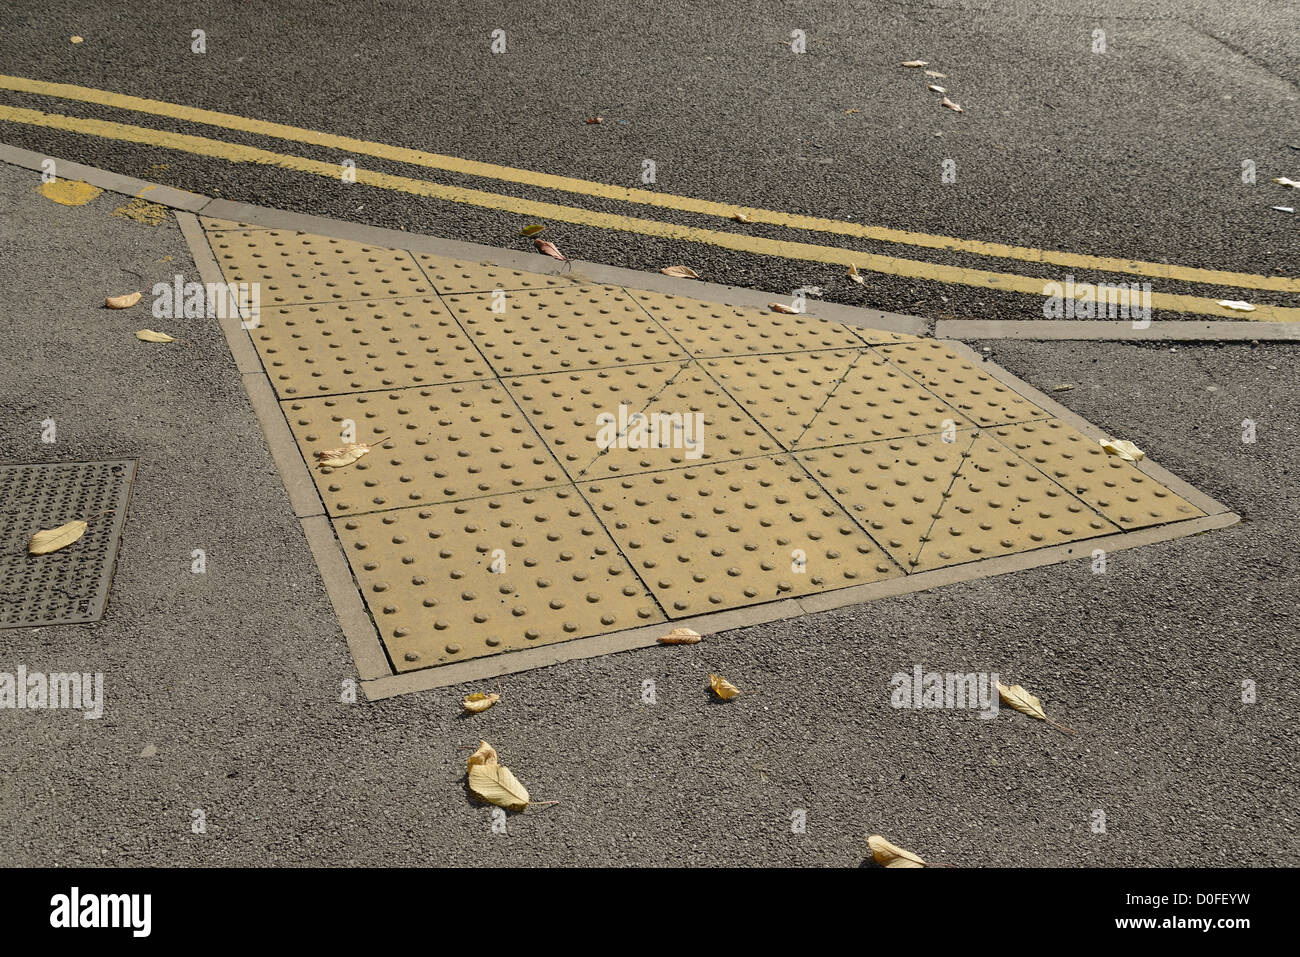 Pavimentazioni tattili in corrispondenza del punto di attraversamento di una strada per aiutare i non vedenti di evitare situazioni di pericolo. Foto Stock